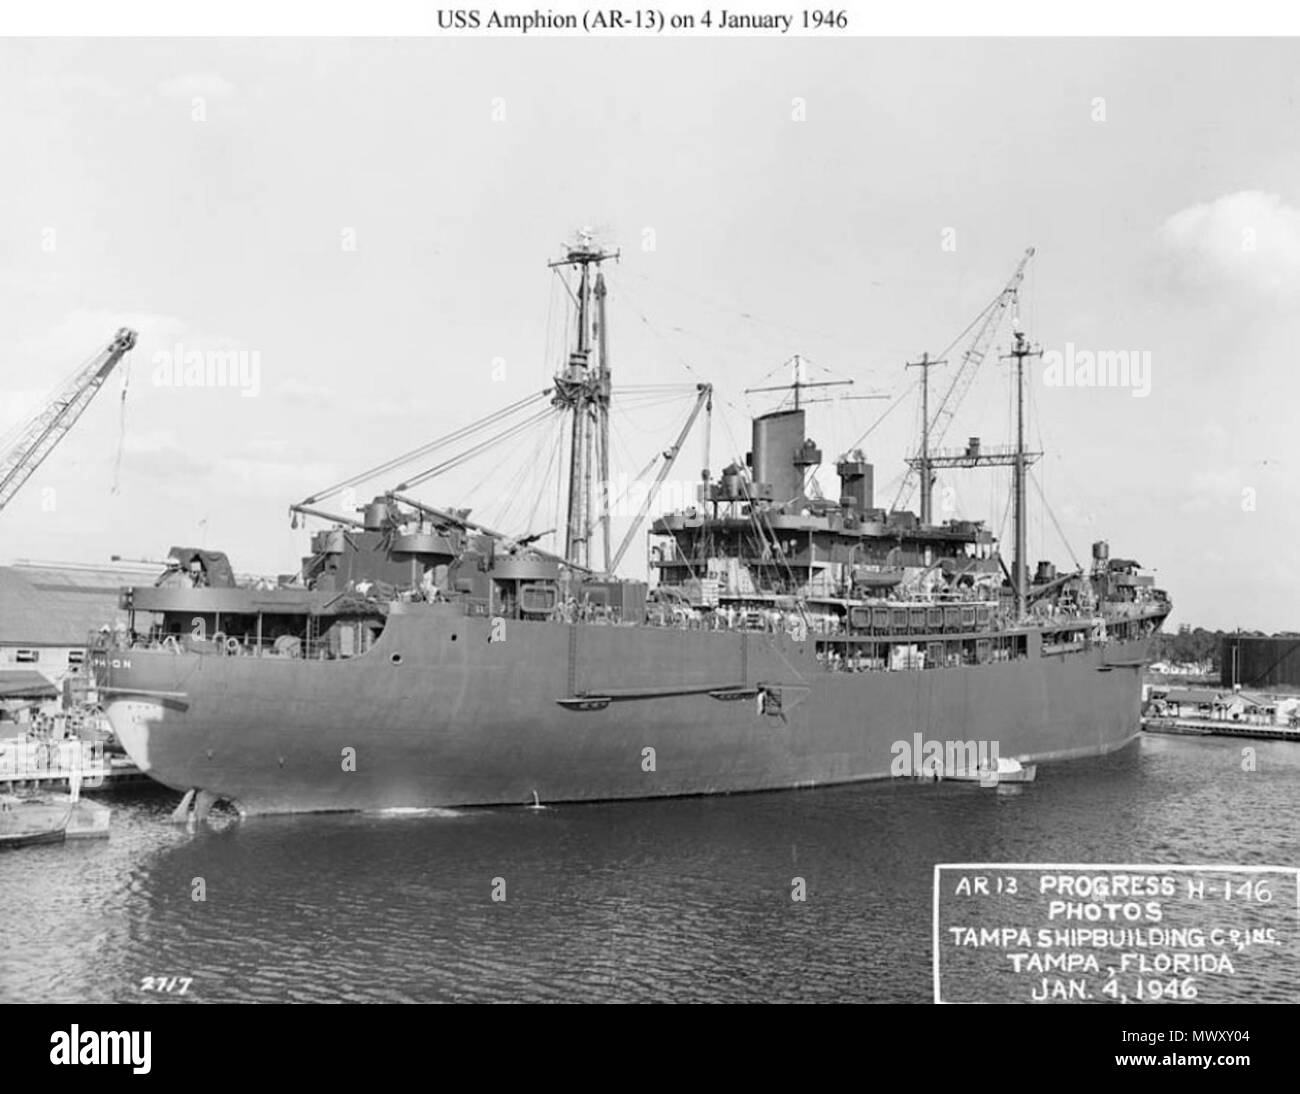 . Englisch: Amphion (AR-13) Herrichtung in Tampa Bay Shipbuilding Co, Tampa, FL., 4. Januar 1946, etwa zwei Wochen vor der Inbetriebnahme am 20. Januar 1946. US National Archives. Foto #unbekannt, RG-19 - LCM, ein US-Marine Büro der Schiffe Foto jetzt in den Sammlungen des US National Archives. 4. Januar 1946. US Navy Büro der Schiffe 623 USS Amphion 1. Stockfoto